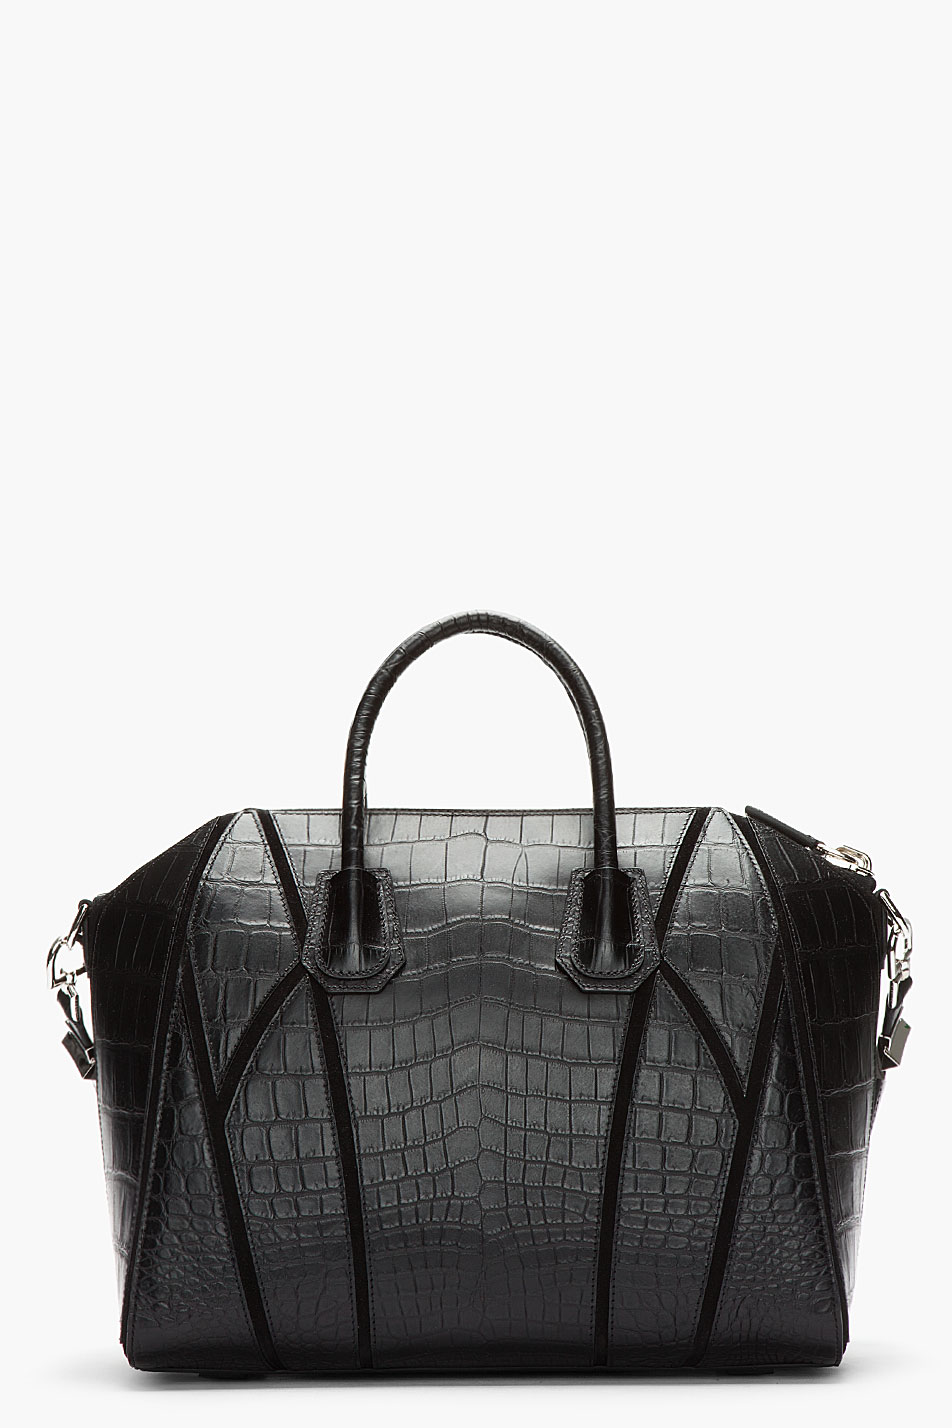 Givenchy Croc Patchwork Antigona Bag 